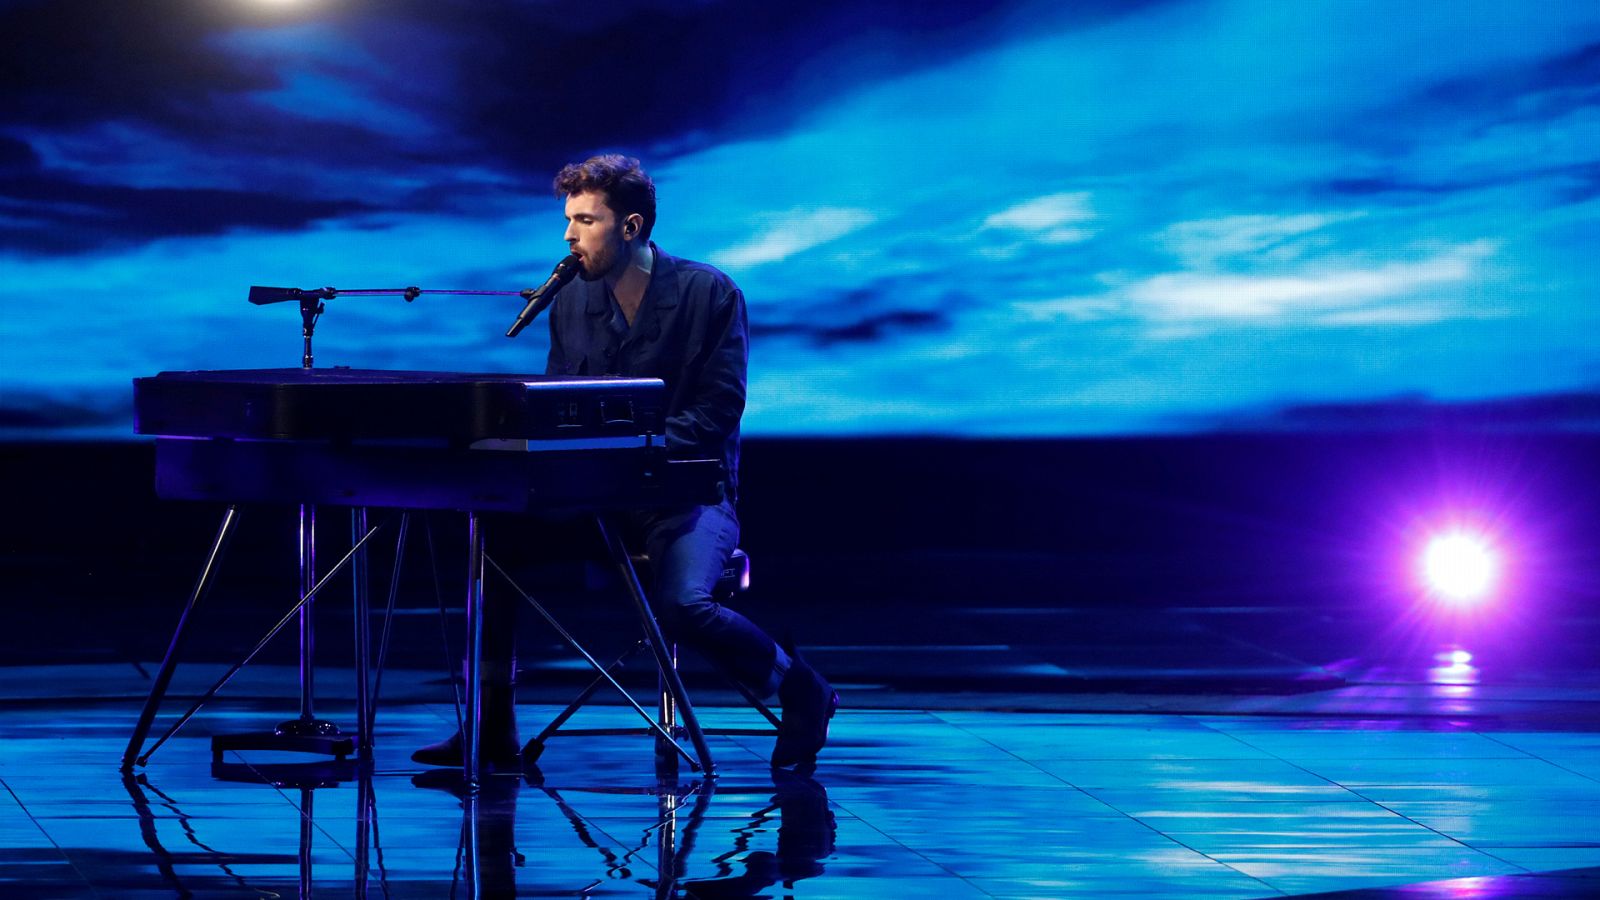 Eurovisión 2019 - Minuto de Países Bajos en el ensayo general de la segunda semifinal